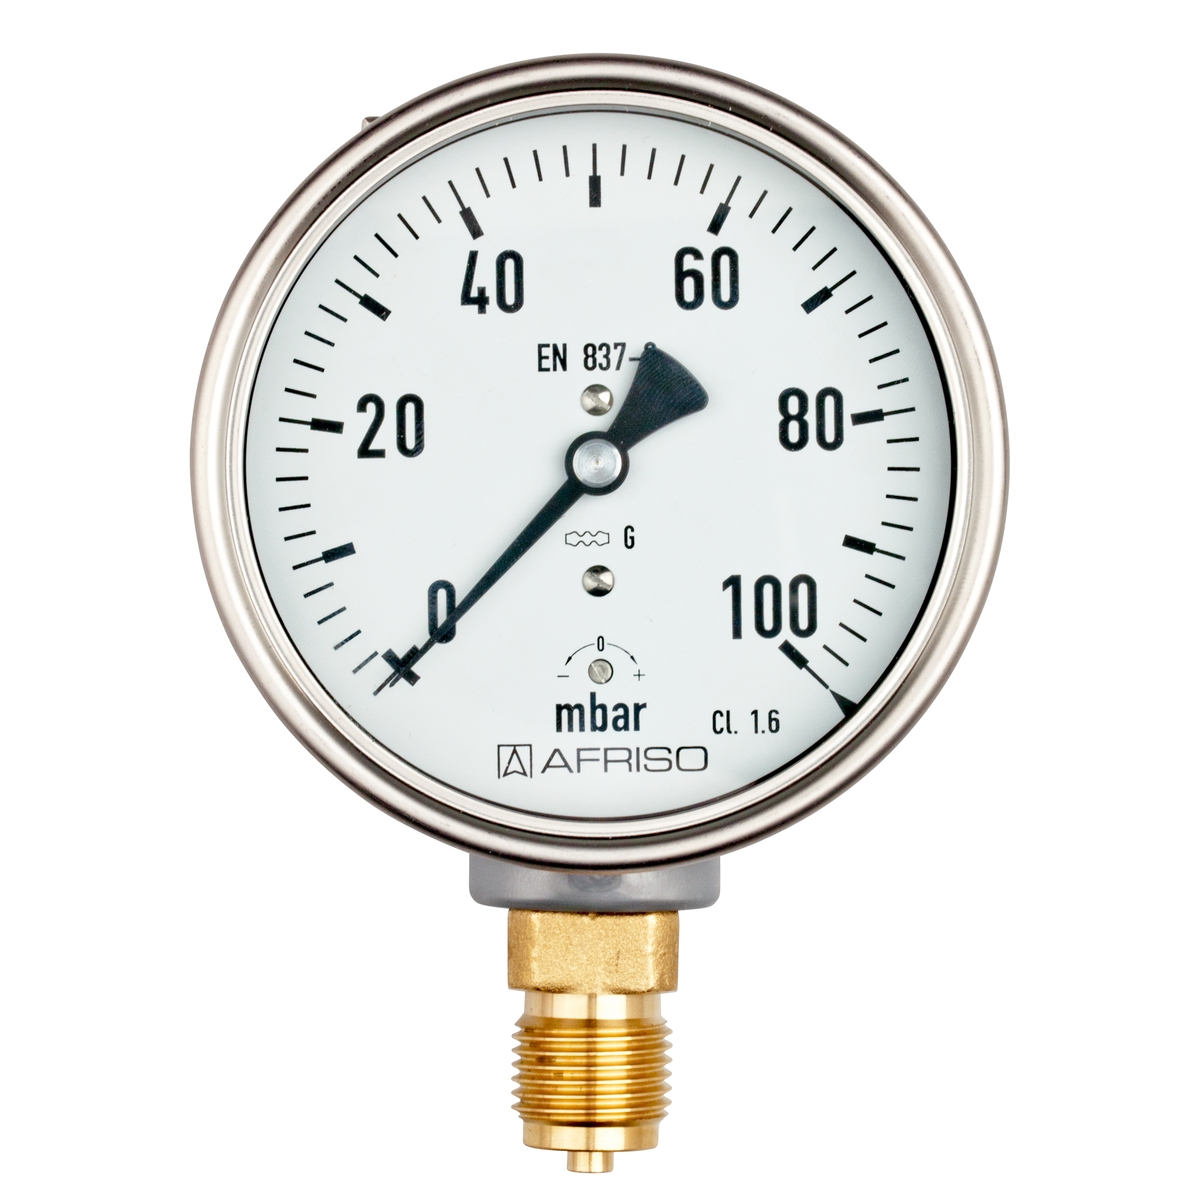 Manometr KP 100 pro plynná média, nerezový, Ø 100 mm, 0 ÷ 100 mbar, G½", radiální, typ D4 - AFRISO.CZ